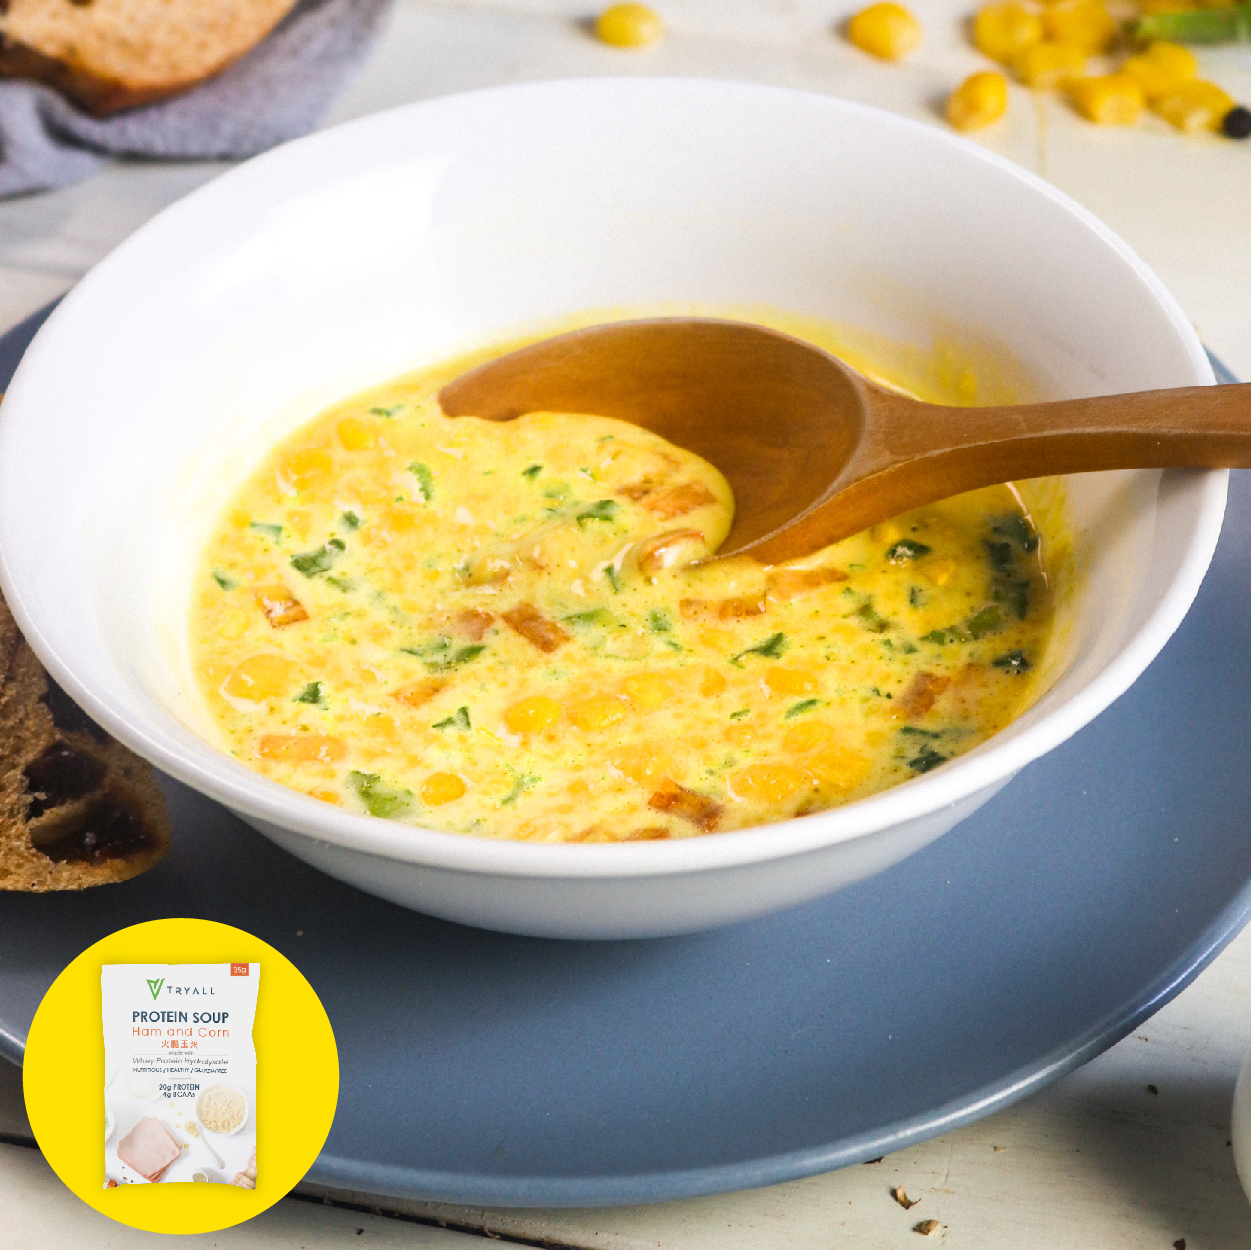 Tryall 高蛋白濃湯-火腿玉米 市面上蛋白質含量最高的濃湯